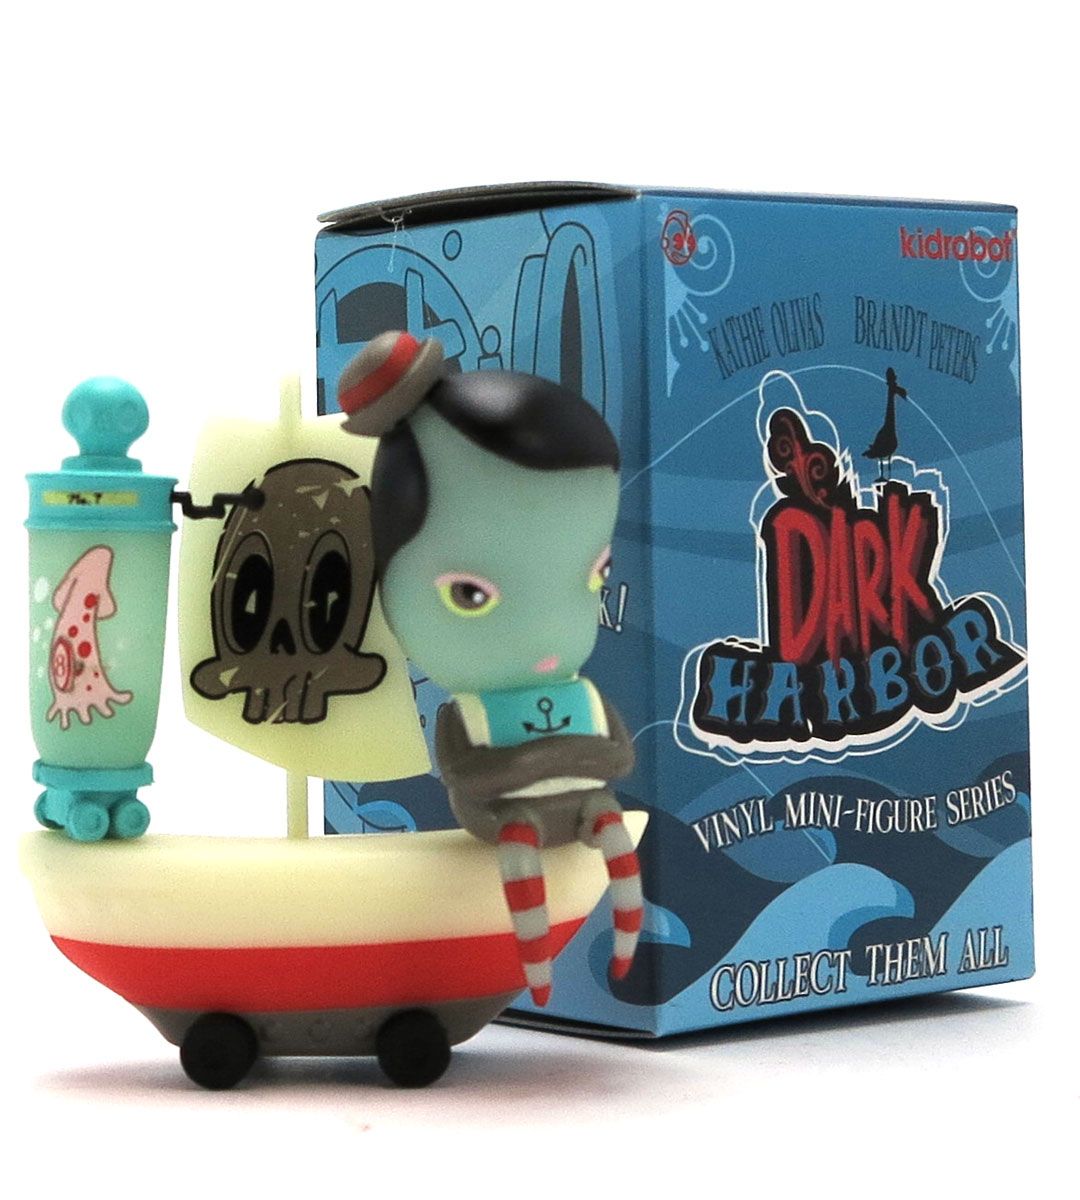 Dark Harbor Mini Series - Kathie Olivas & Brandt Peters